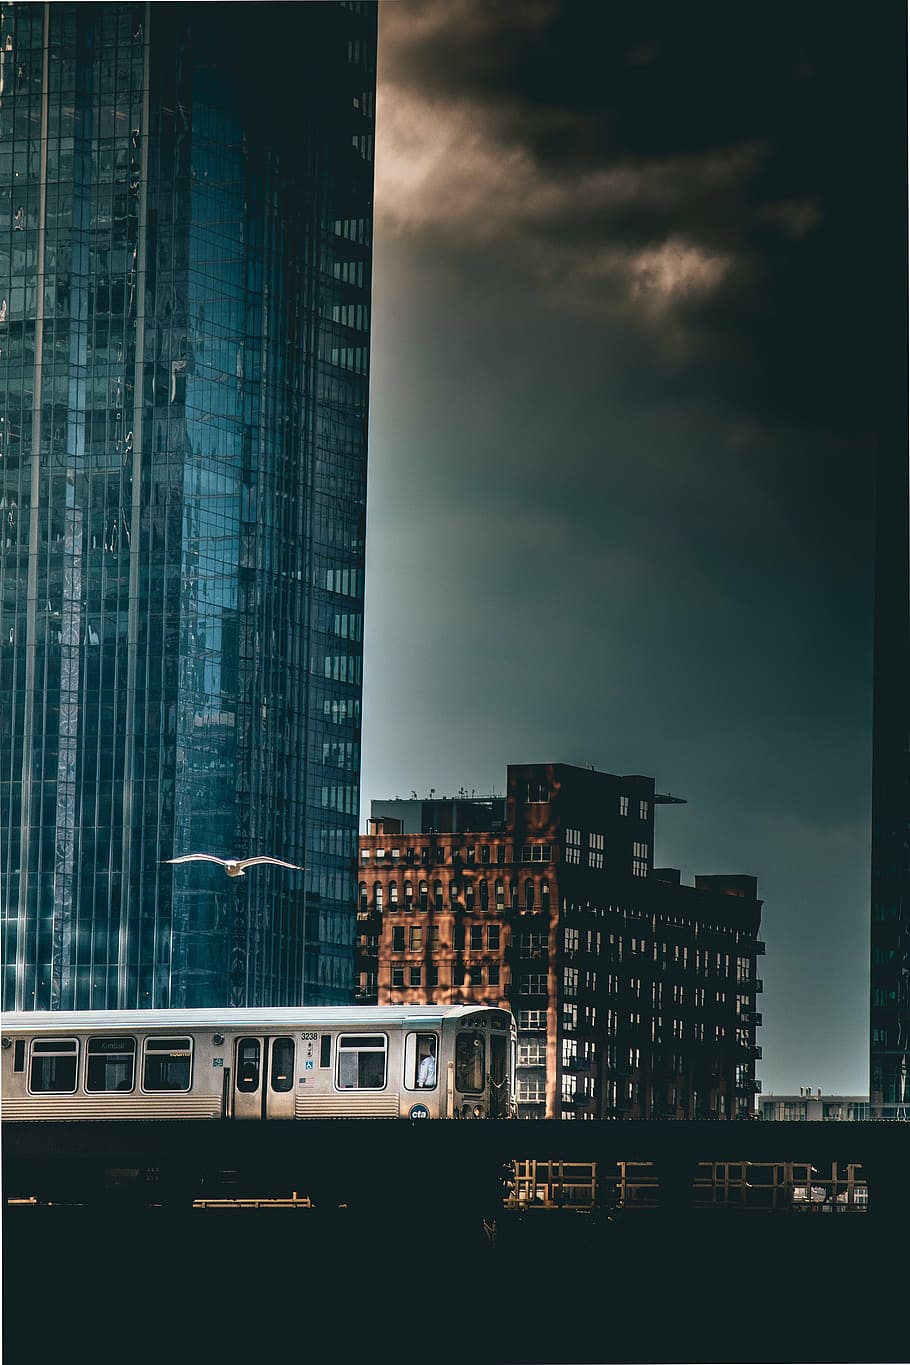 cinza, ônibus, ao lado, azul, edifício de vidro, grosso, preto, nuvens, arquitetura, construção